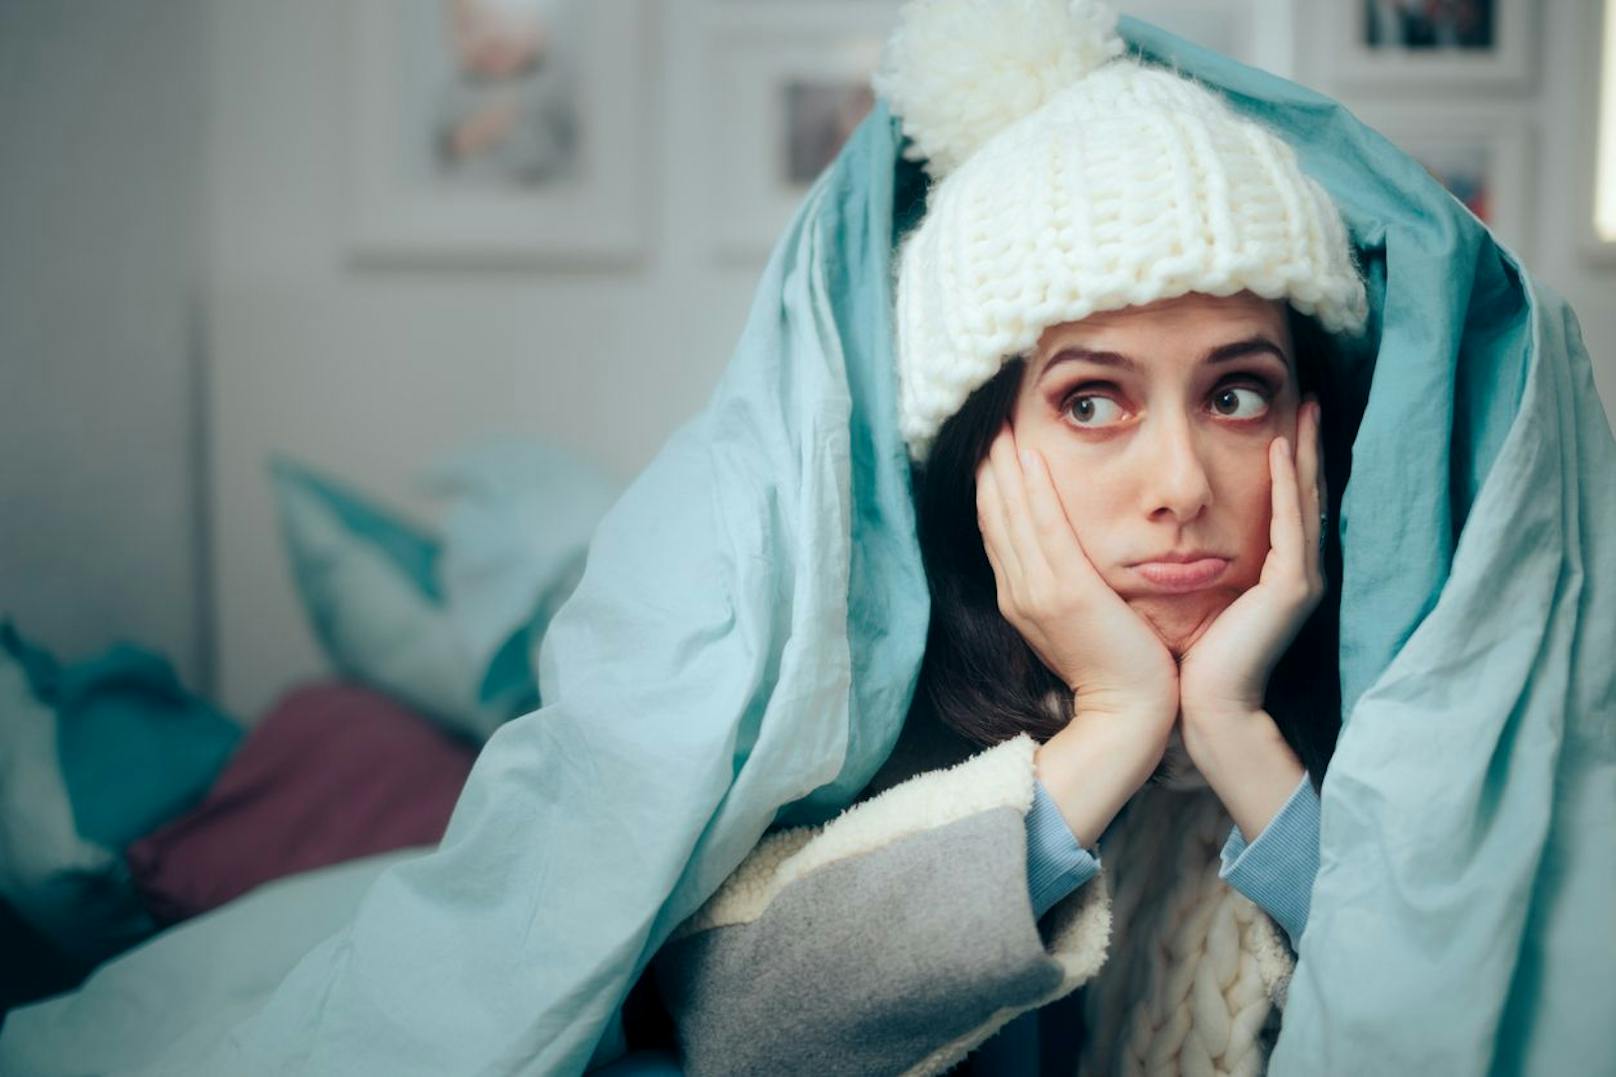 Eine kühlere Raumtemperatur kann dir beim Einschlafen helfen. Liegt deine Zimmertemperatur zwischen 16-18 Grad Celsius solltest du ungestört ruhen können.